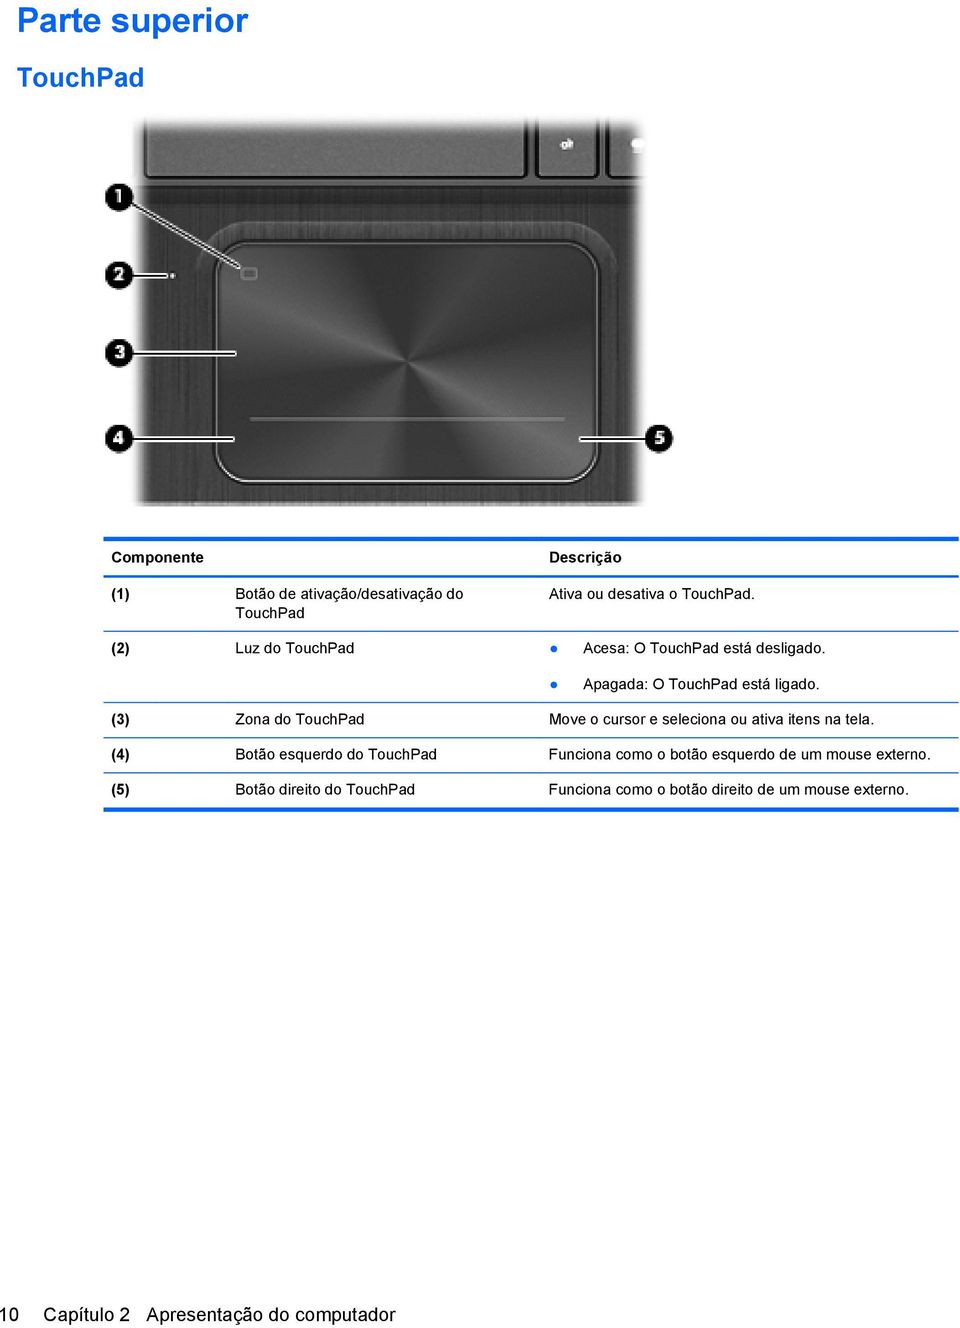 (3) Zona do TouchPad Move o cursor e seleciona ou ativa itens na tela.